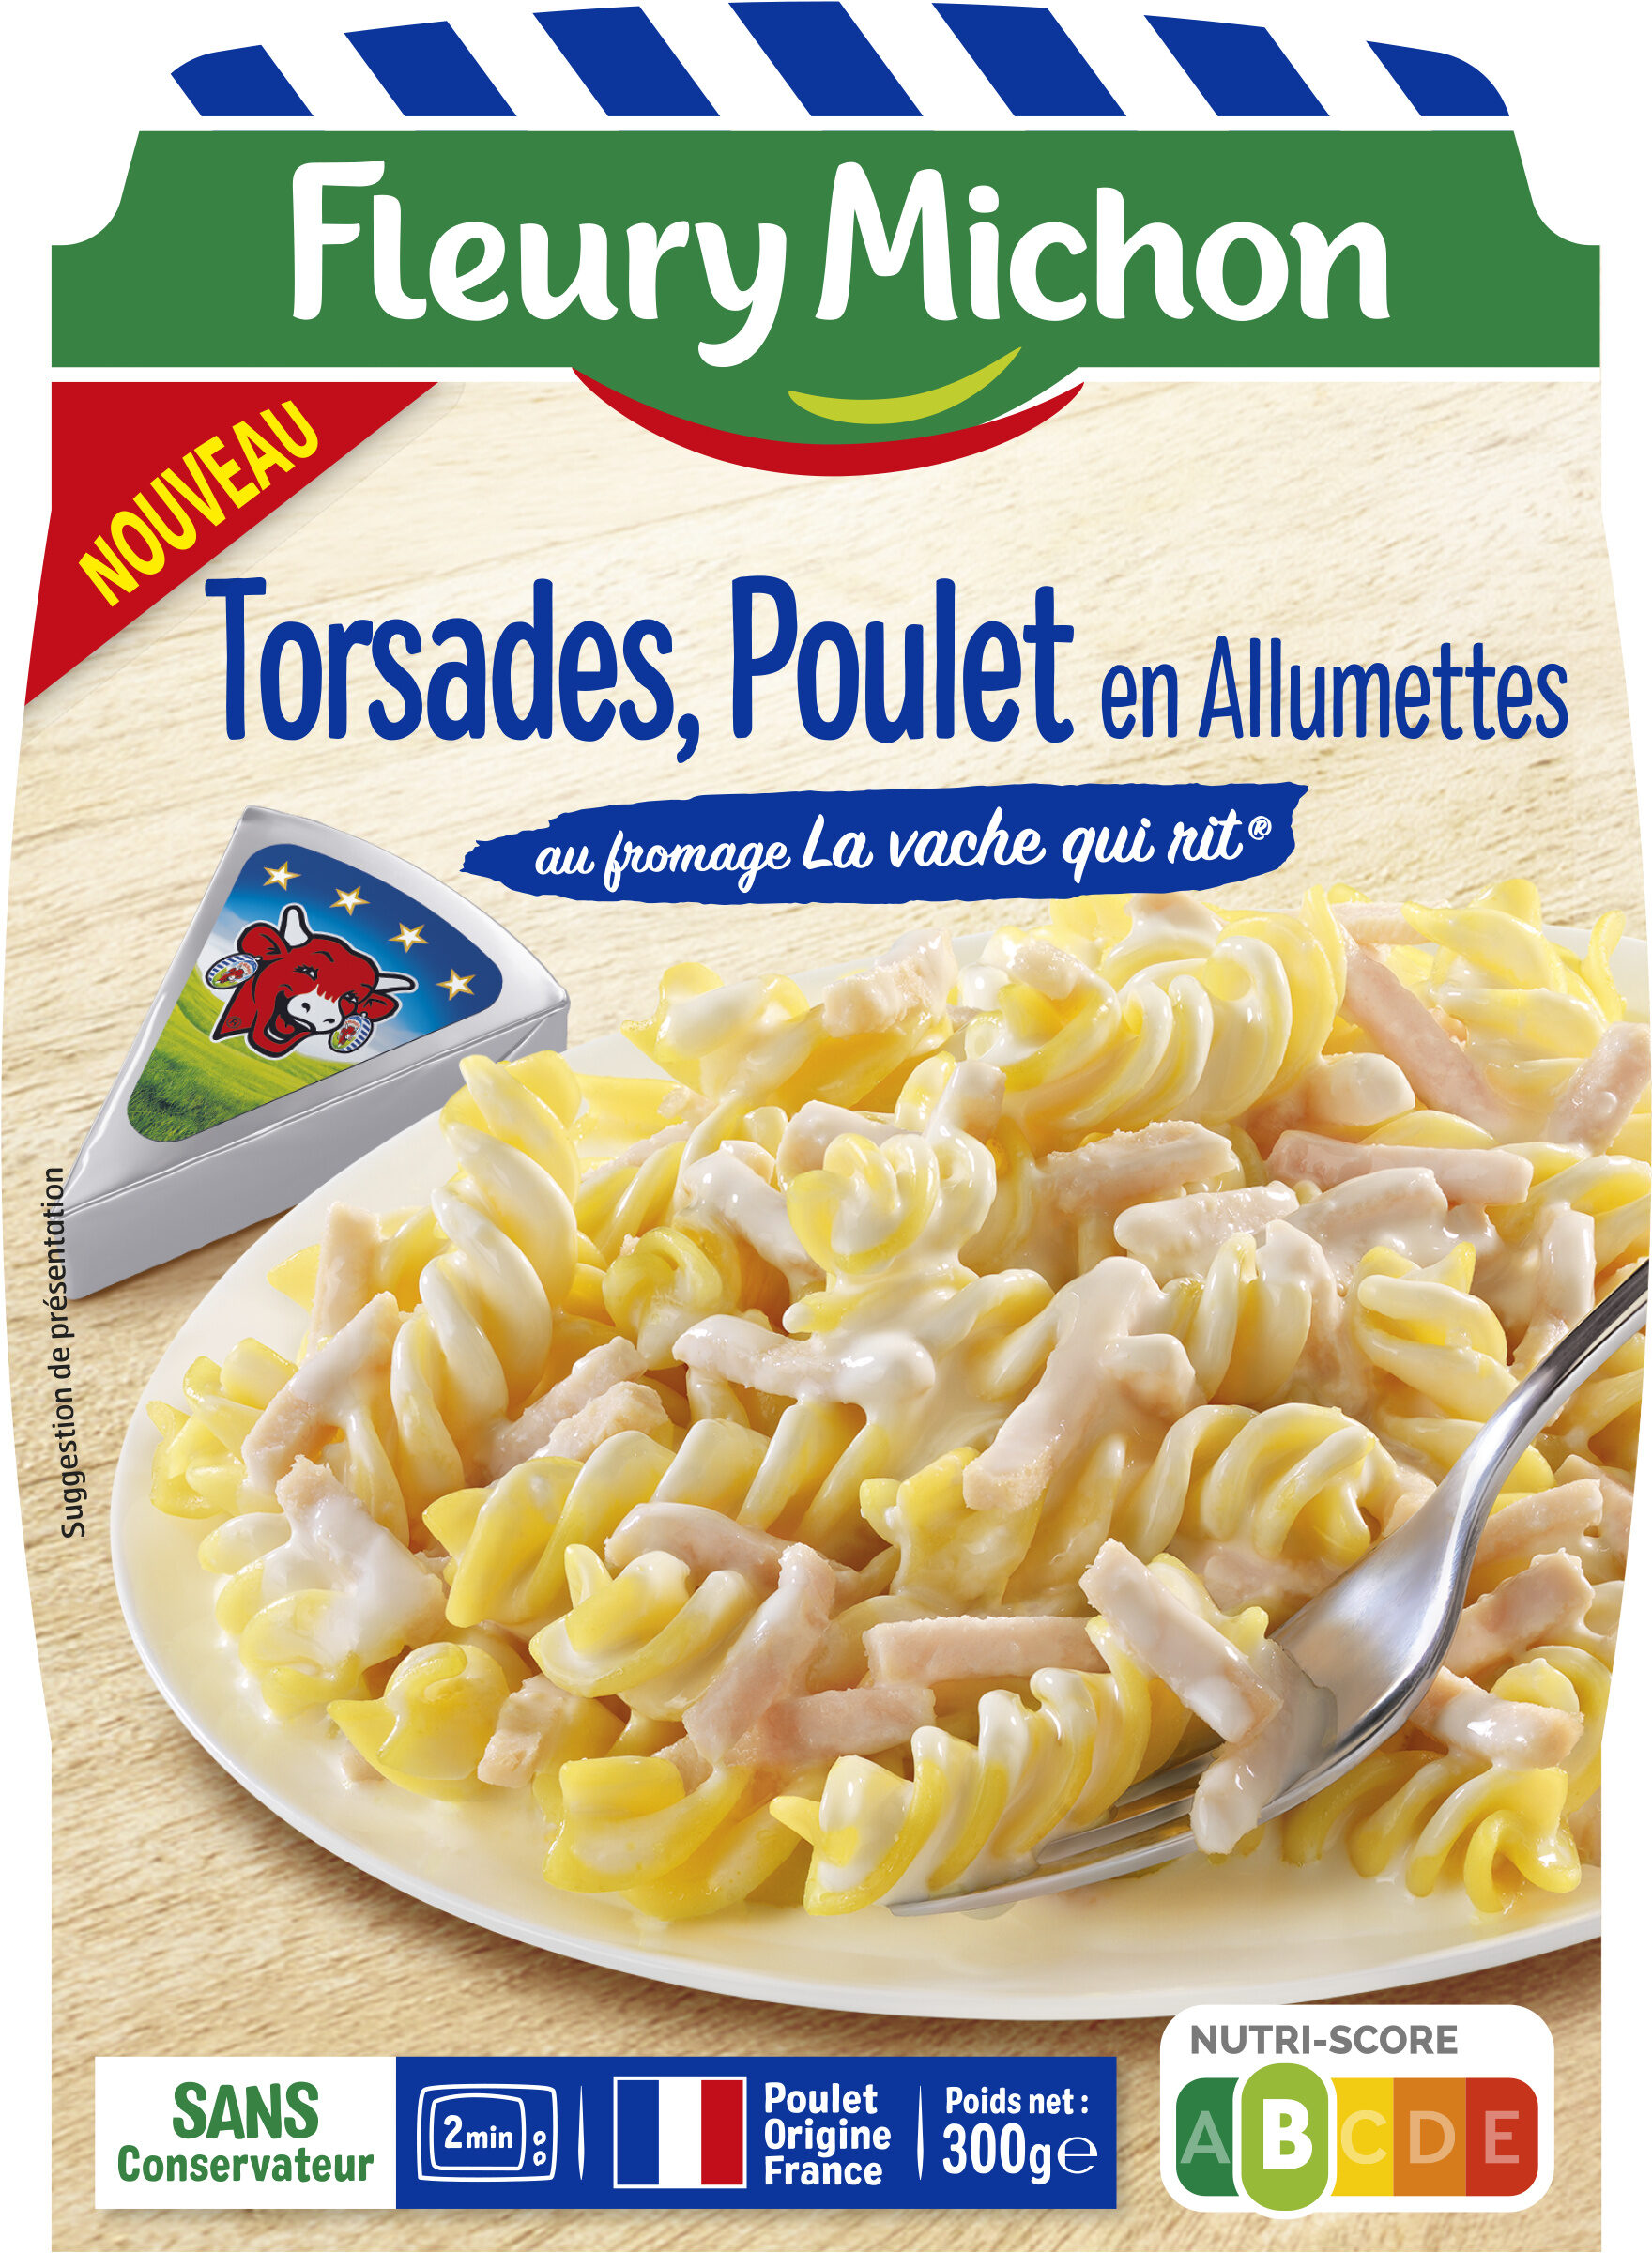 Torsades Poulet en Allumettes au fromage La vache qui rit® - Produit